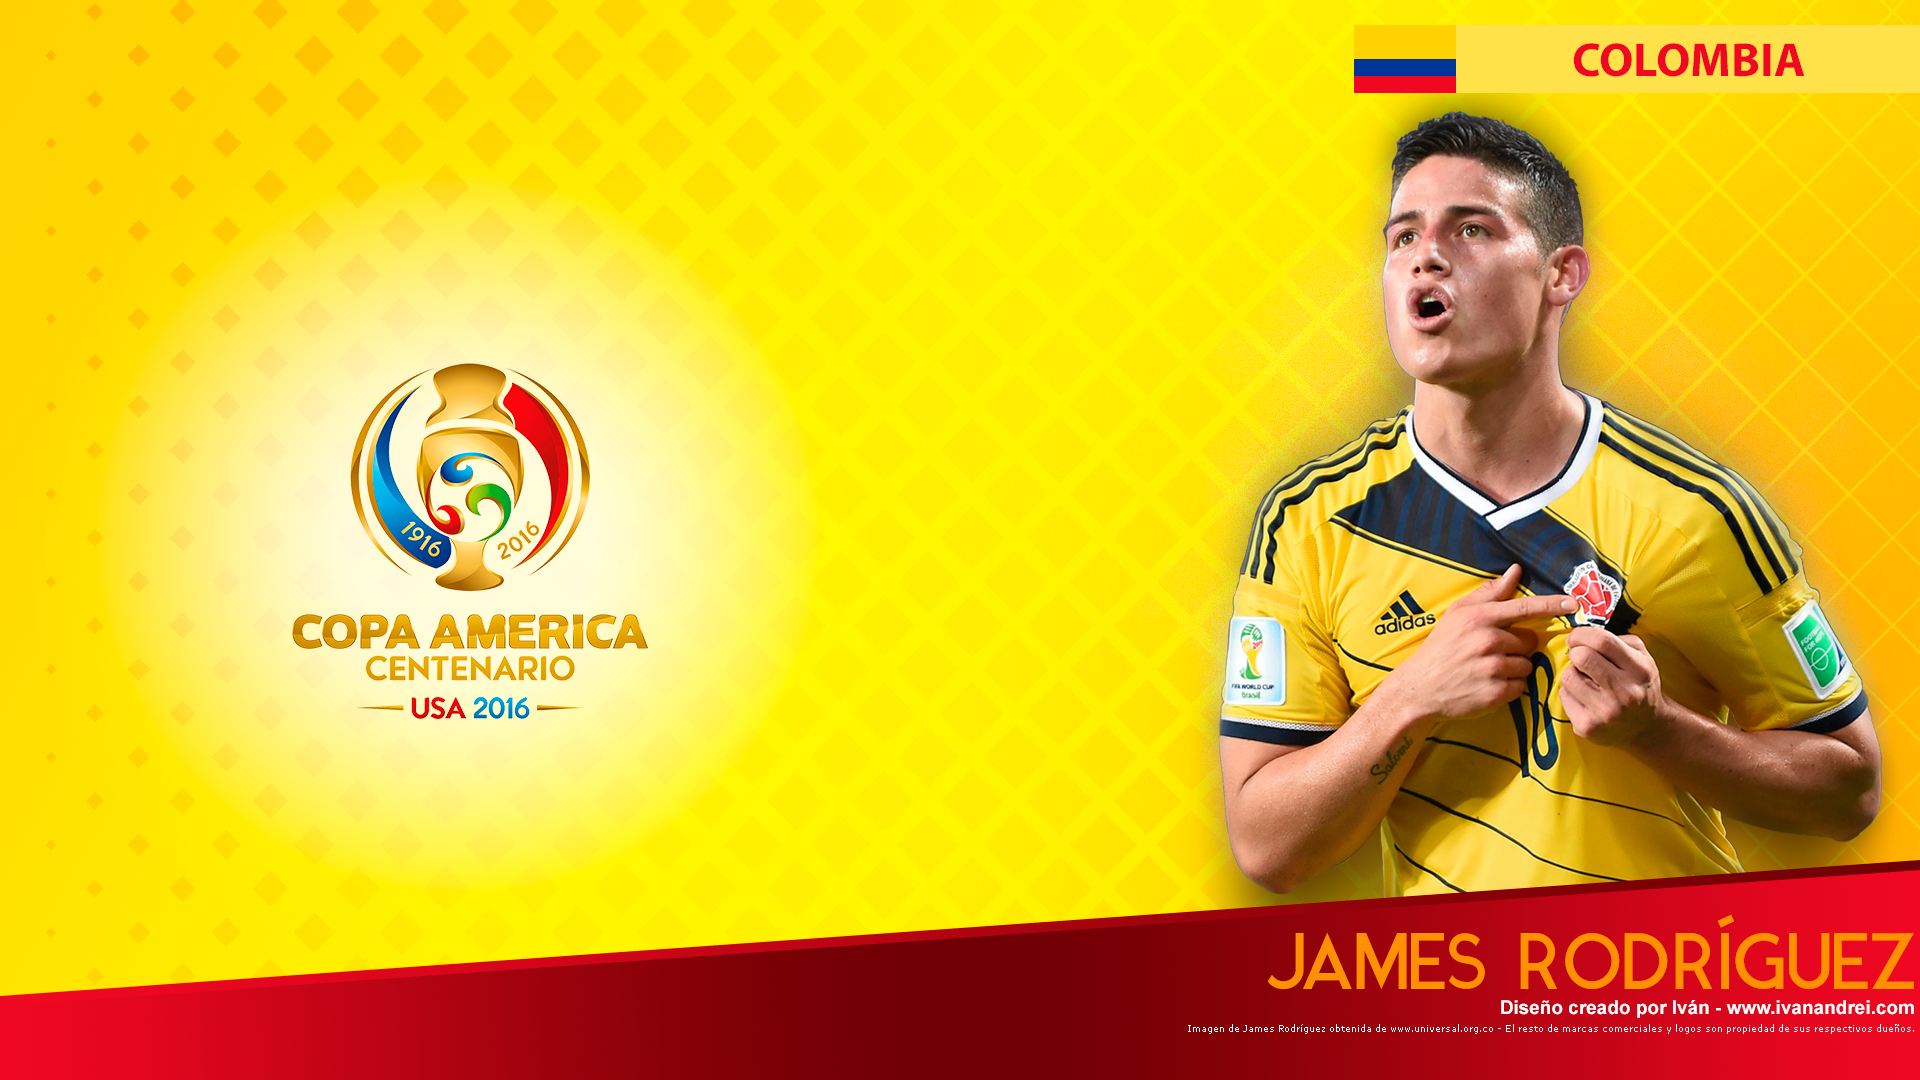 Copa América Centenario USA 2016 - Colombia (James Rodríguez - 1920x1080)